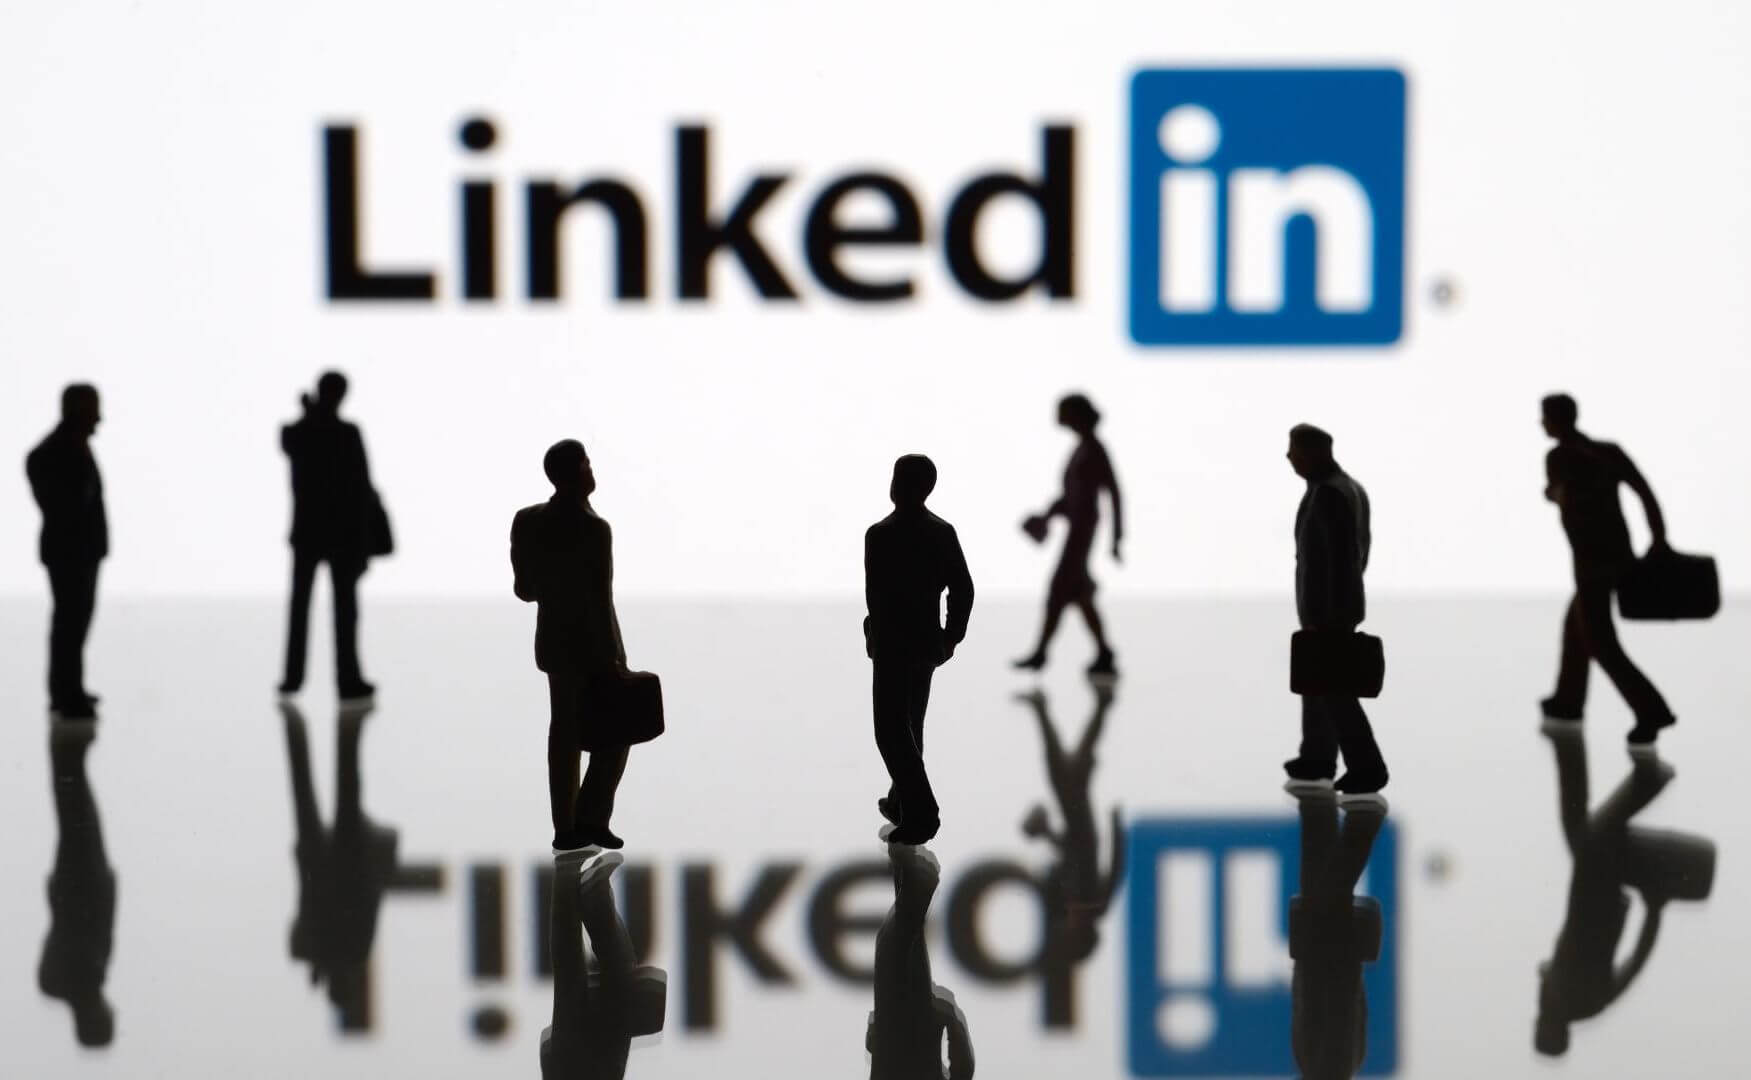 LinkedIn: Hãy tìm hiểu về nền tảng kinh doanh chuyên nghiệp LinkedIn thông qua những hình ảnh ấn tượng bên dưới. LinkedIn không chỉ là một mạng xã hội, mà còn là một công cụ quan trọng giúp kết nối các nhà quản lý và chuyên gia trong lĩnh vực kinh doanh.